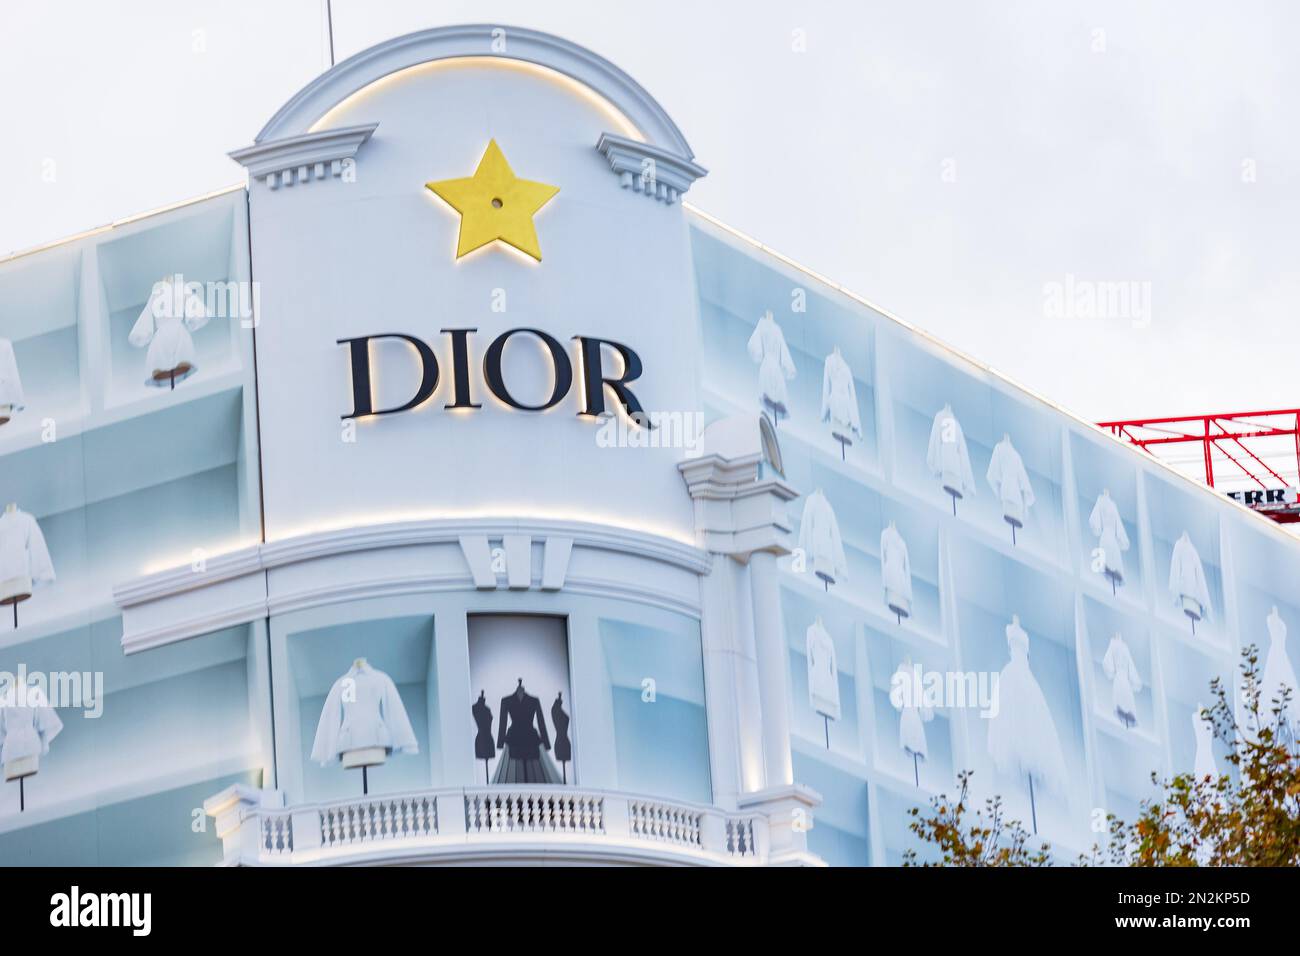 Dior is offering a virtual visit of its Champs-Elysées boutique in Paris